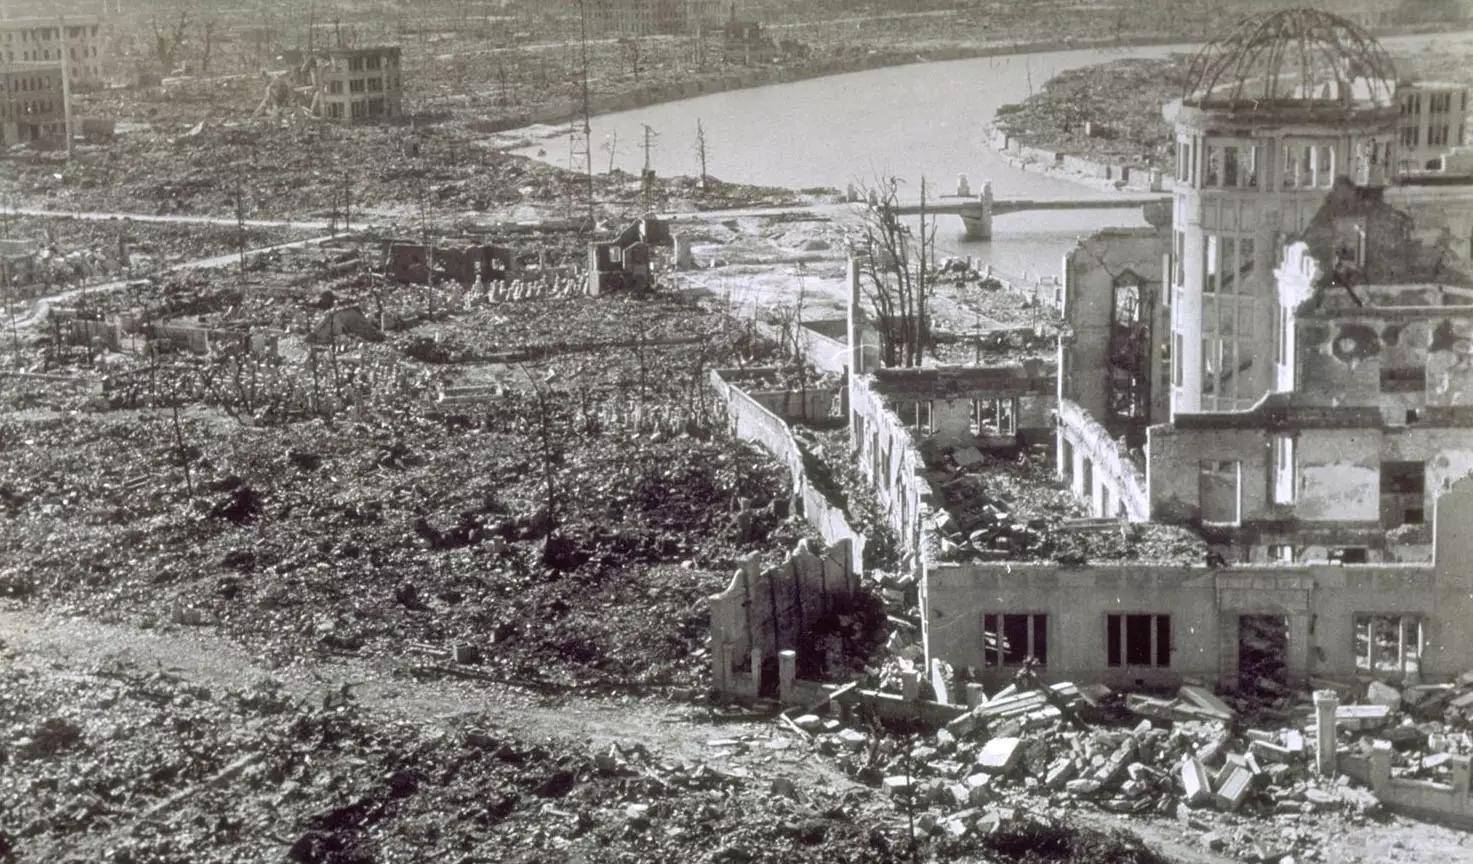 原子弹致使20万广岛人死亡投弹组最后一名成员说从不后悔投弹